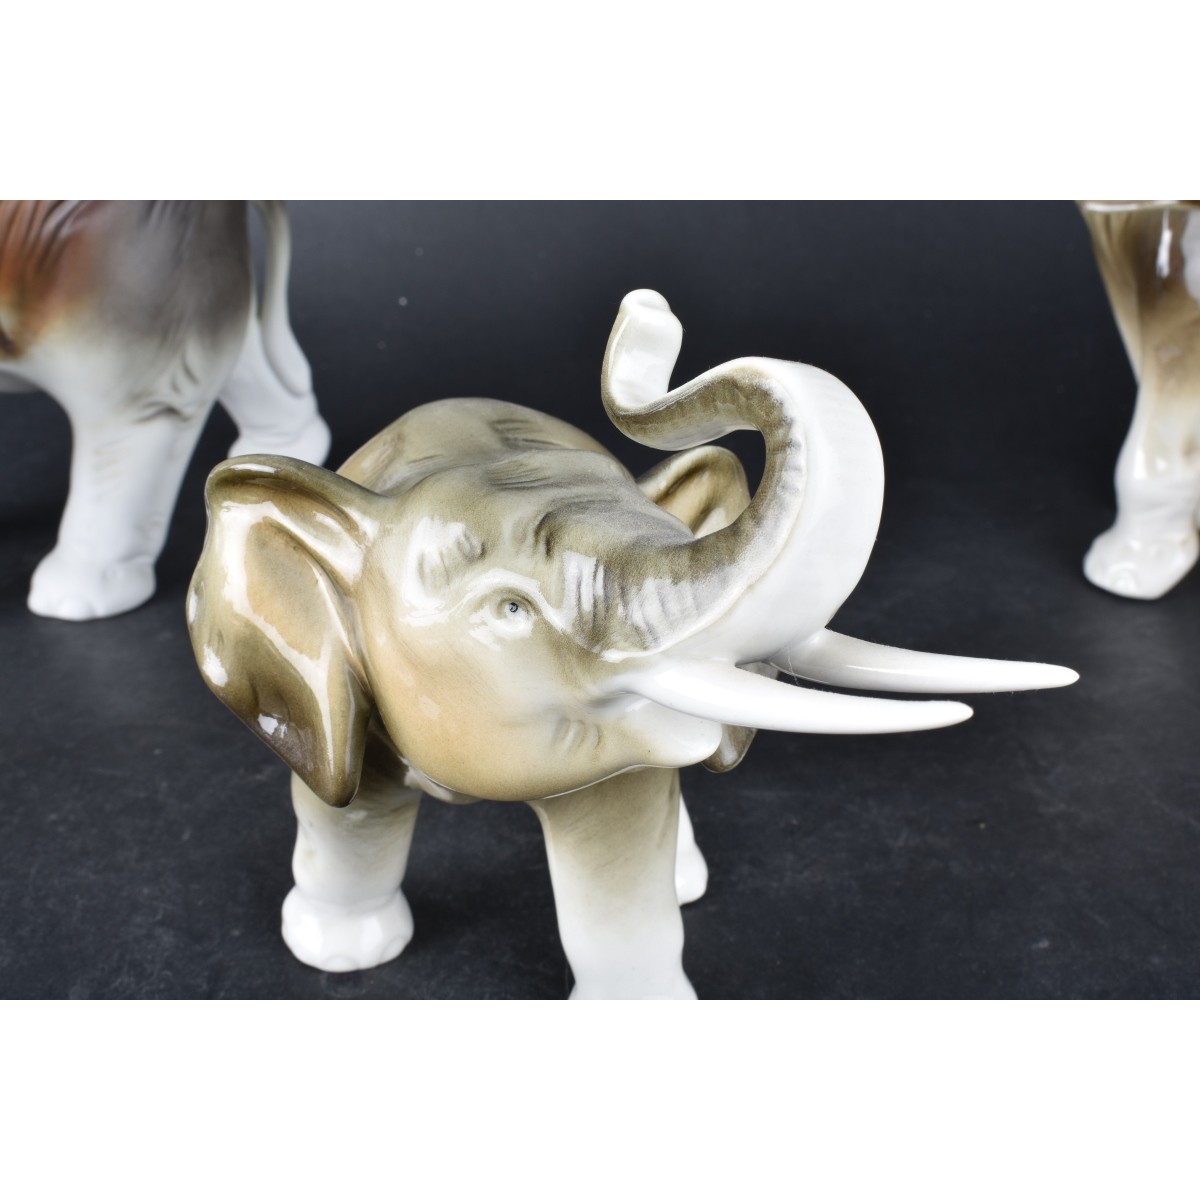 Four (4) Royal Dux Porcelain Elephant Figurines